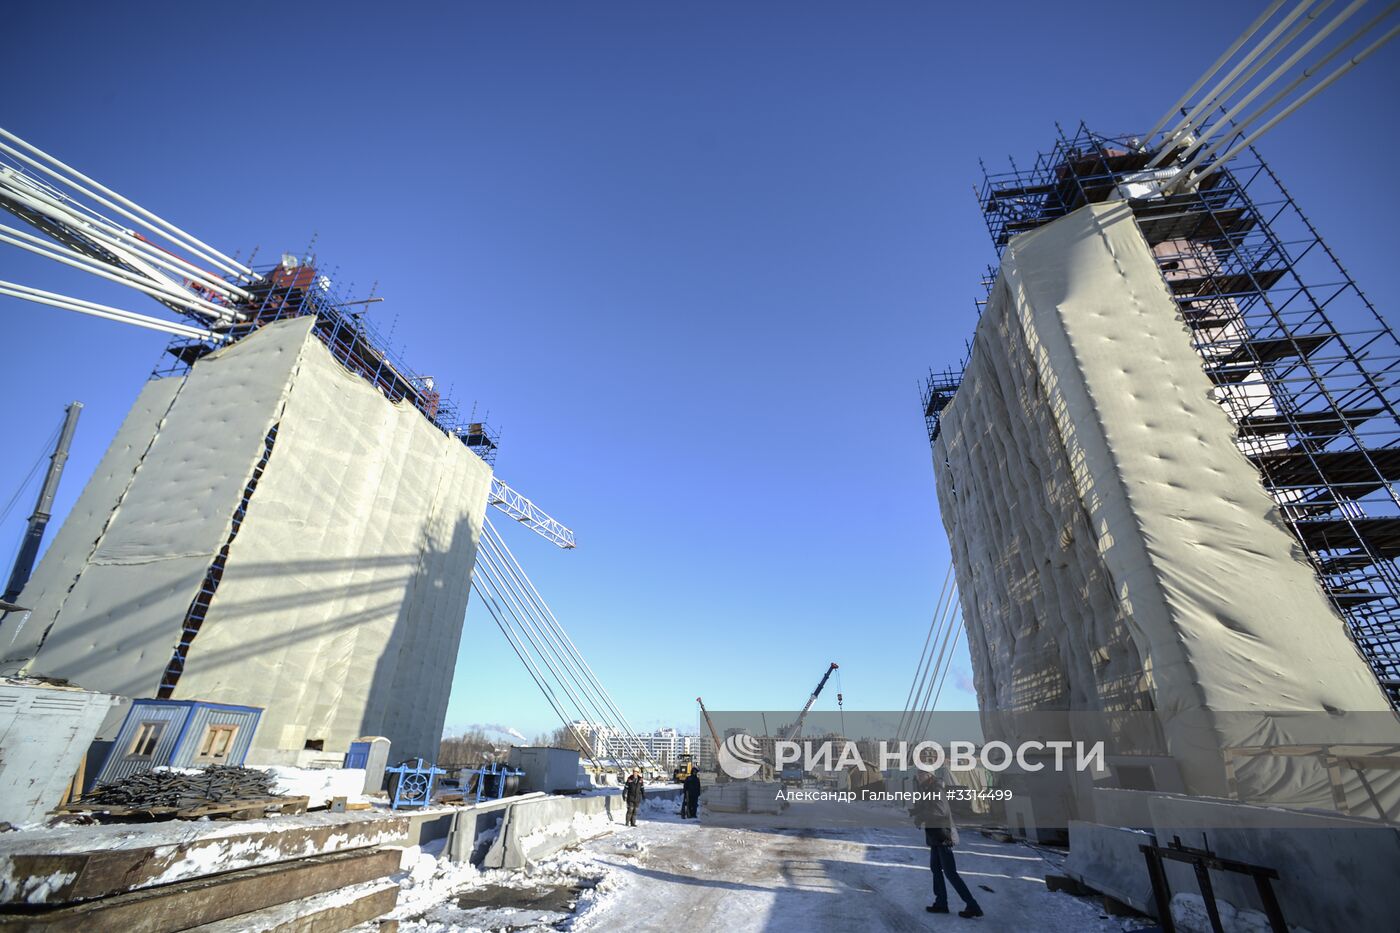 Подготовка инфраструктурных объектов Санкт-Петербурга к ЧМ-2018 по футболу